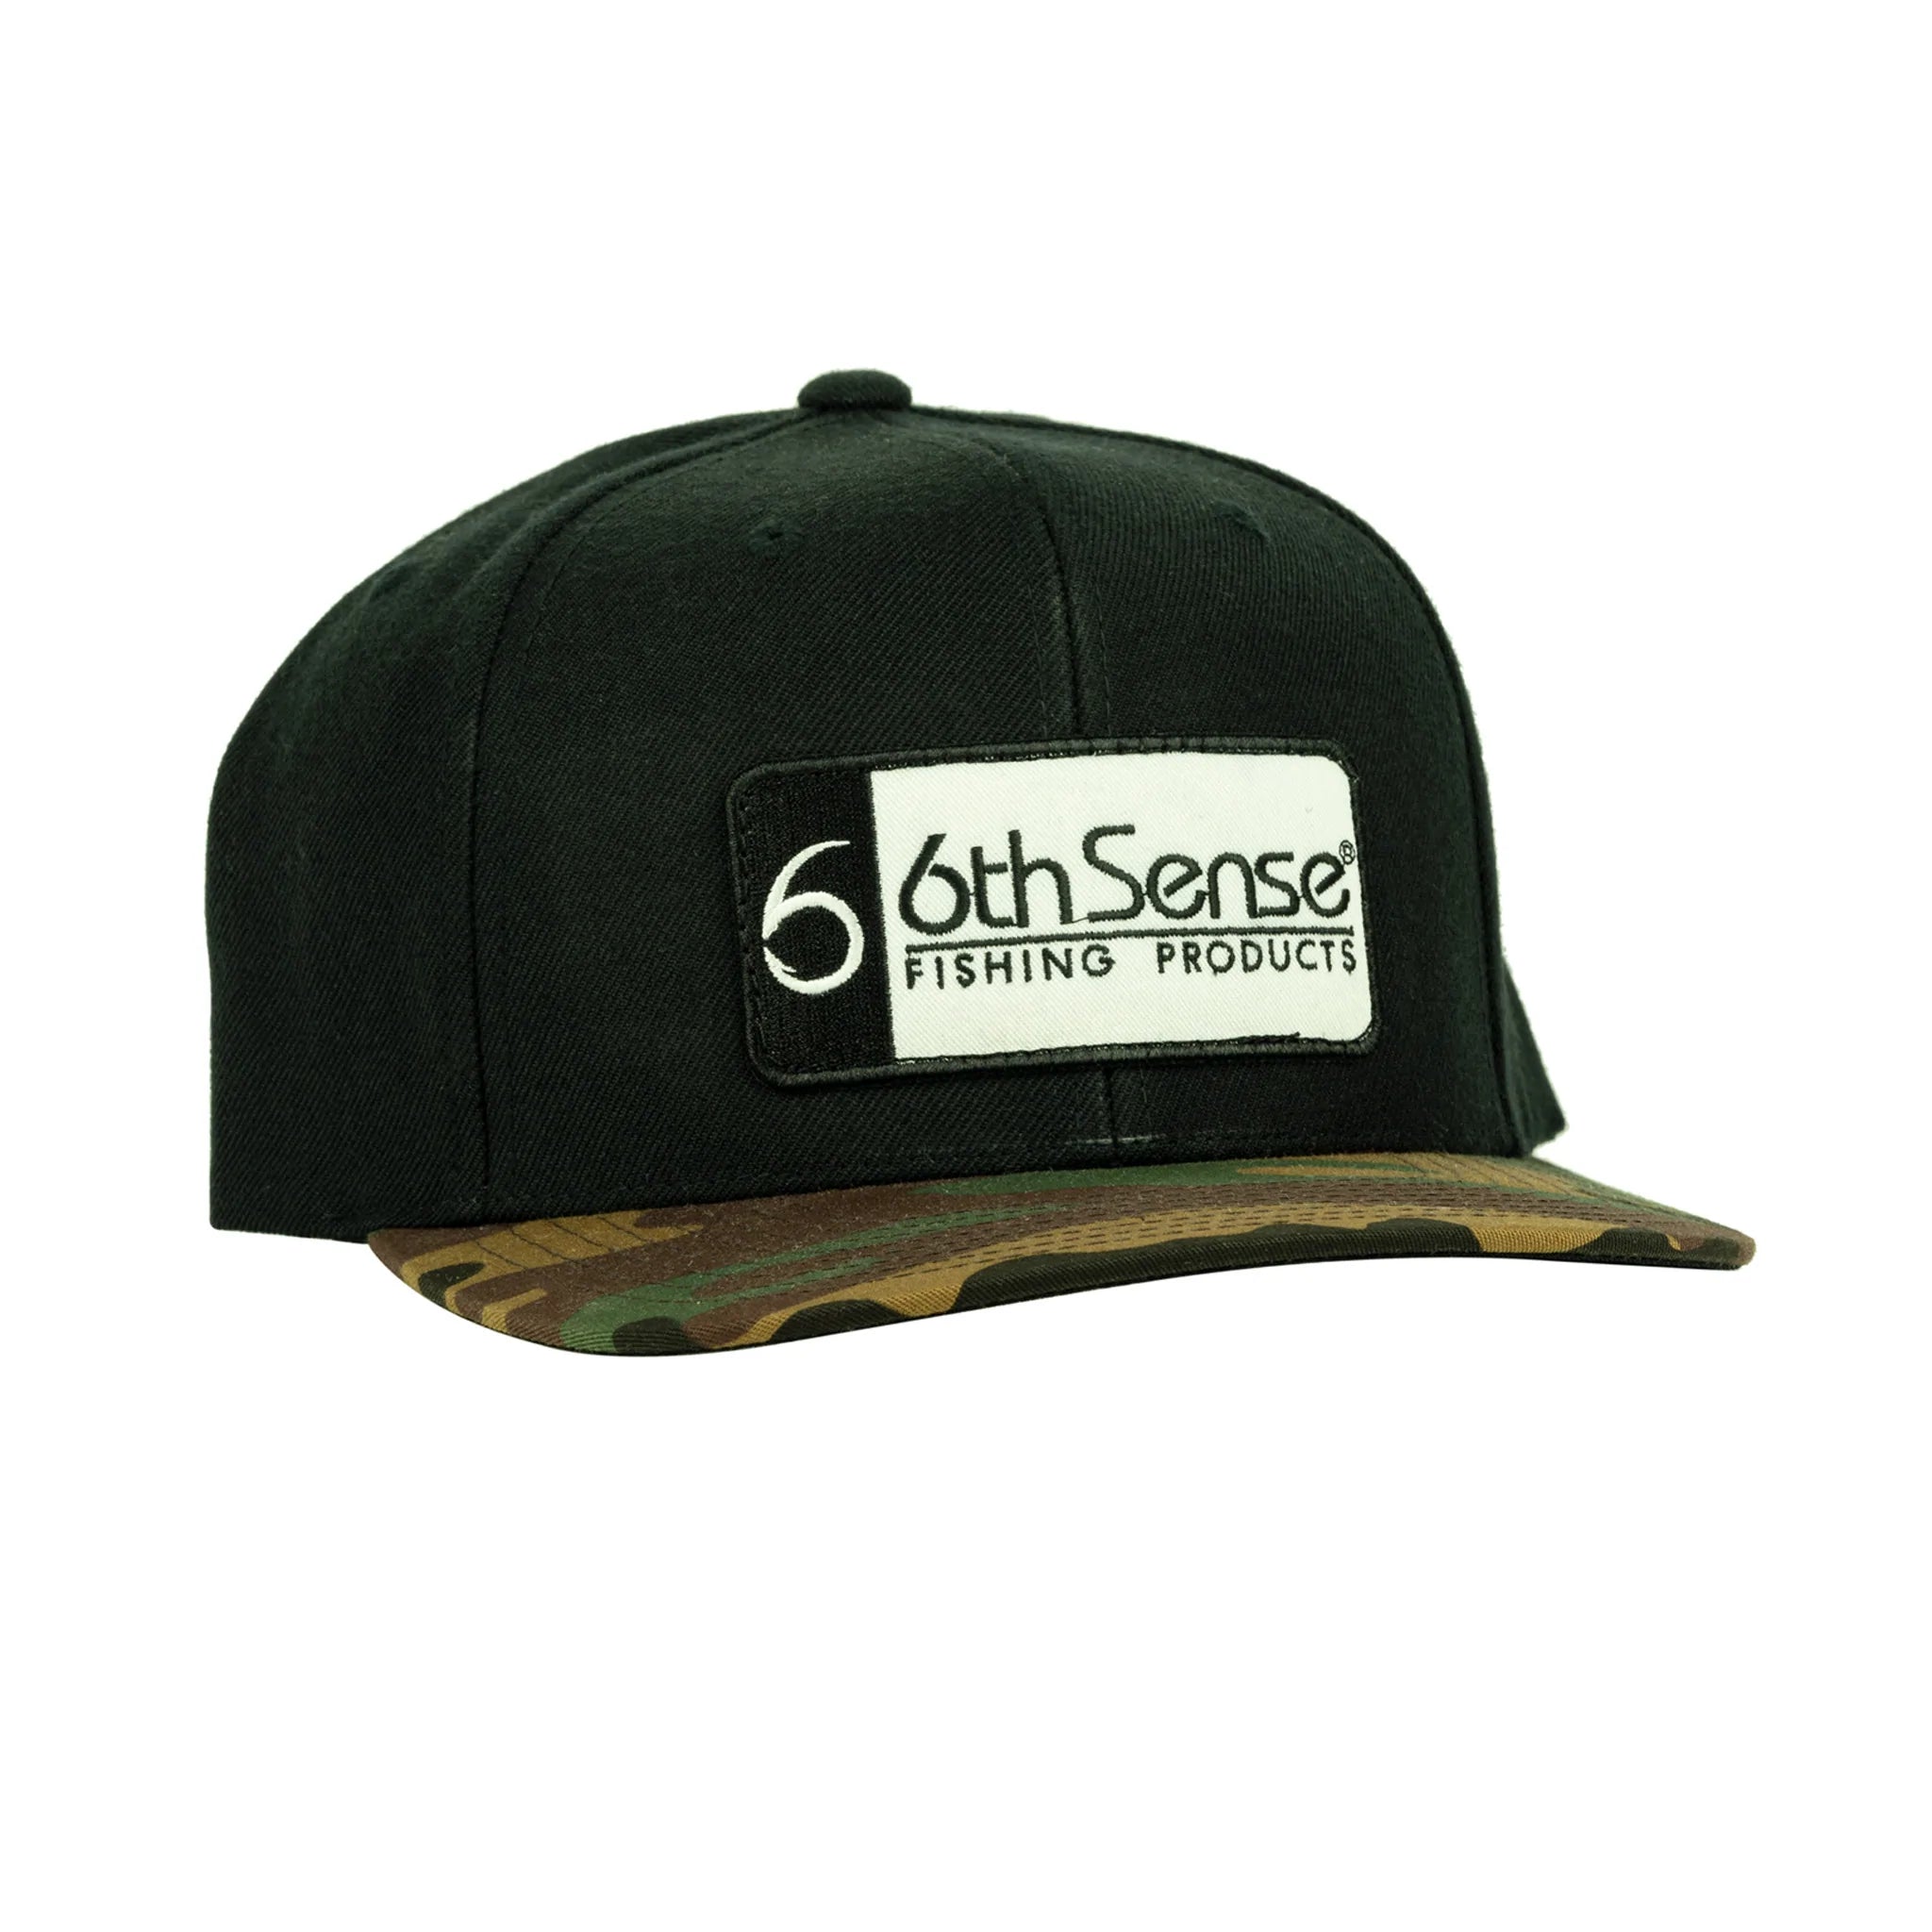 Buy the-hunting-angler-flat-bill 6TH SENSE HATS